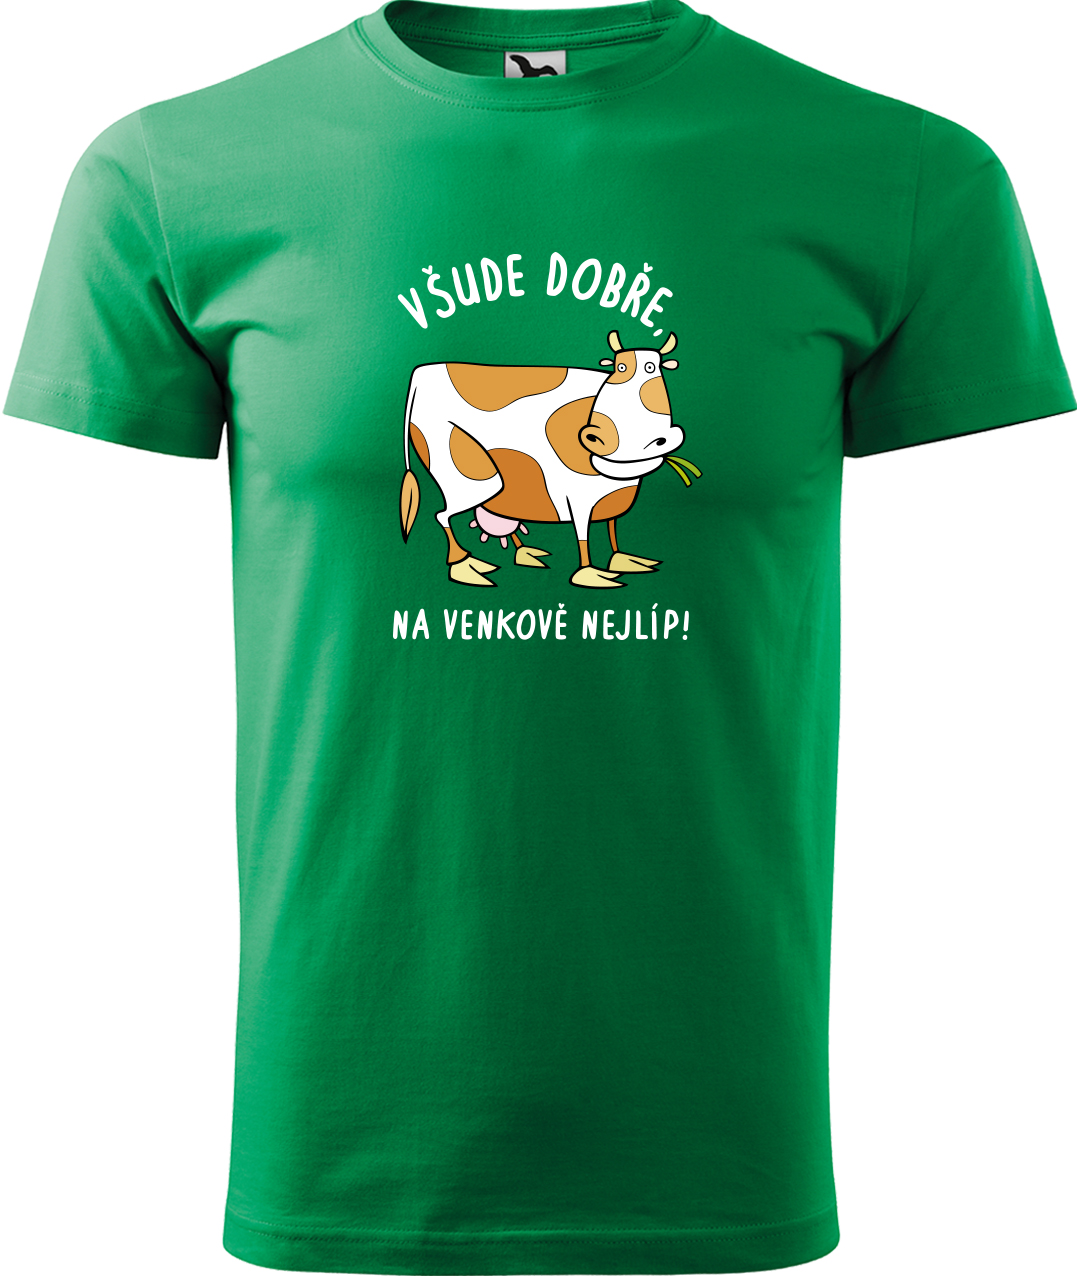 Pánské tričko s krávou - Všude dobře, na venkově nejlíp! Velikost: 2XL, Barva: Středně zelená (16), Střih: pánský